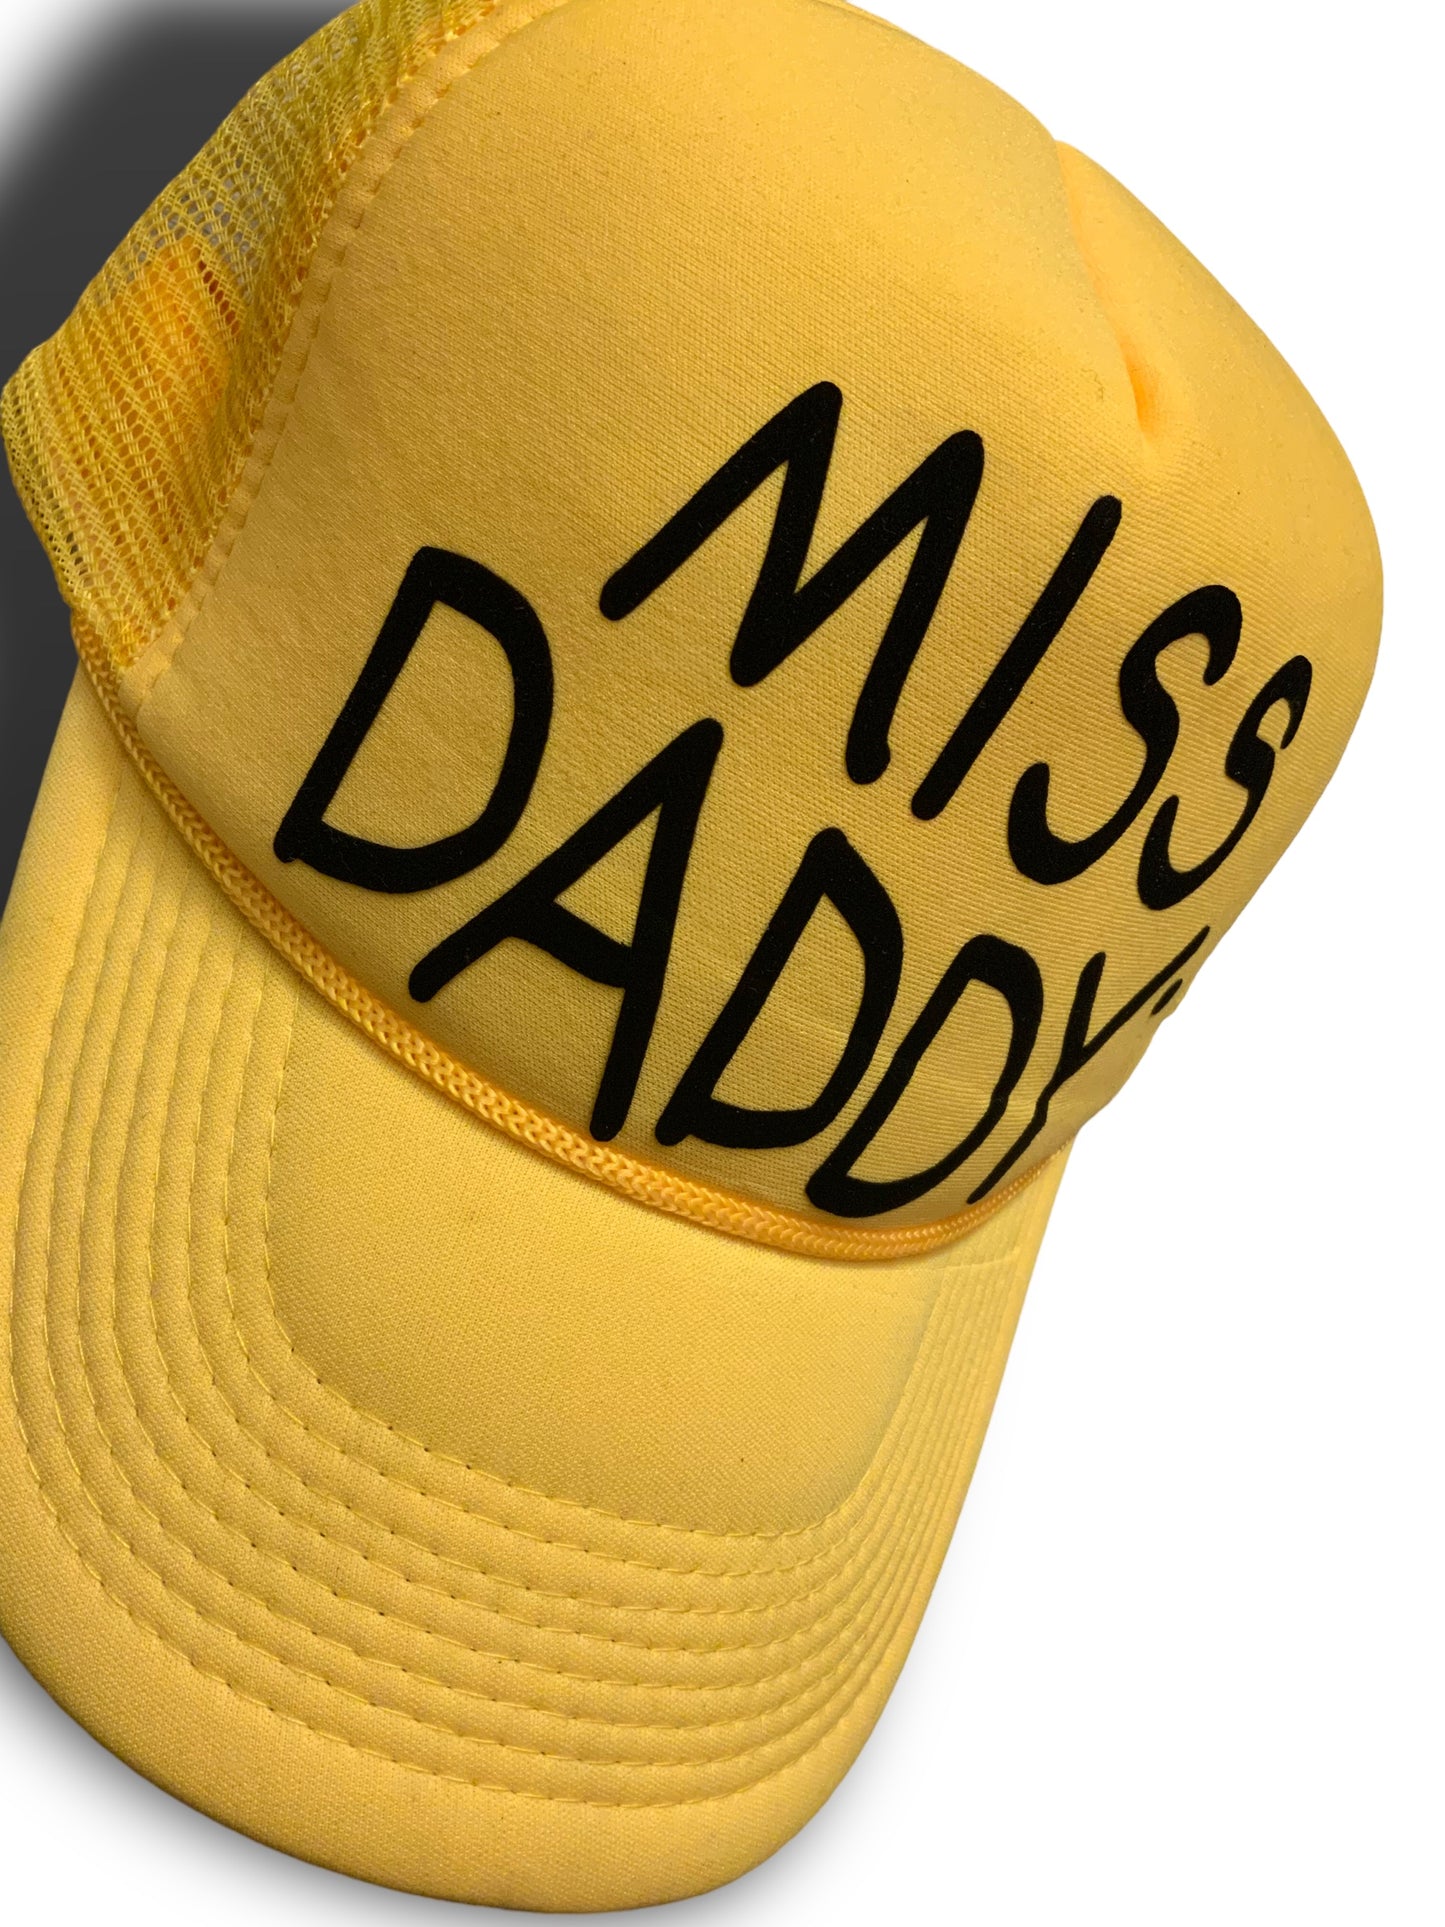 Miss Daddy Trucker